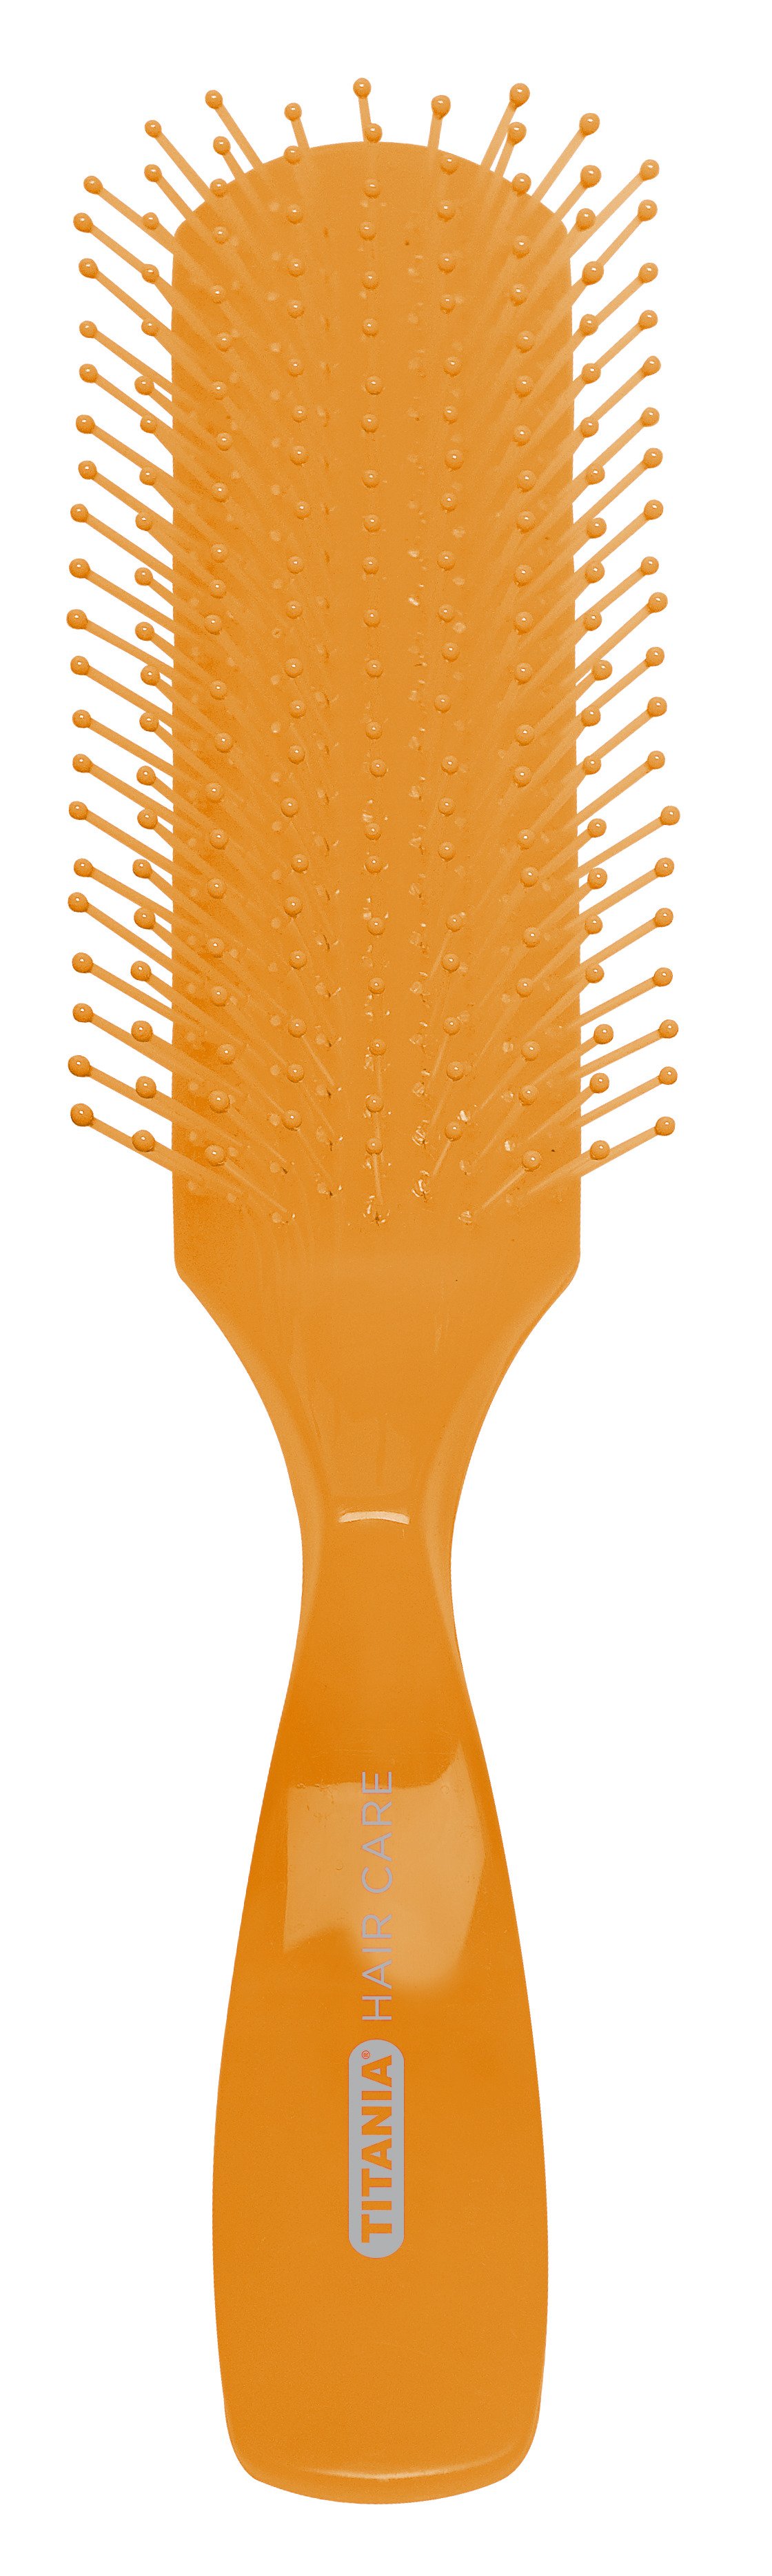 Щітка для волосся Titania масажна, 9 рядів, помаранчевий (1830 оранж) - фото 1